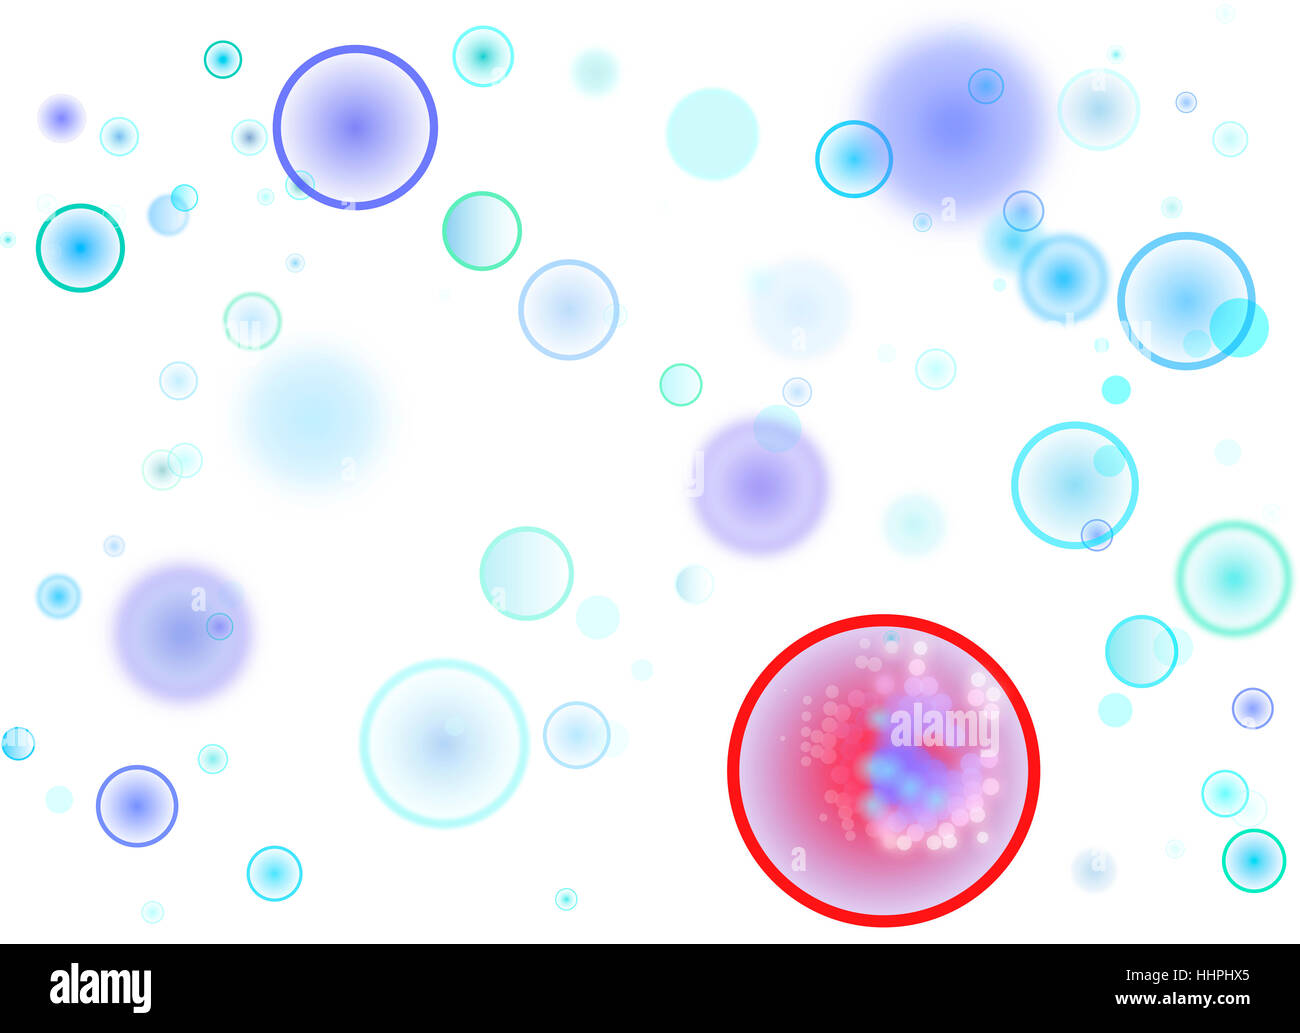 Graphic, cell, Atom, virus, coperchio, tumore, germi, blu, motion, rinvio, Foto Stock